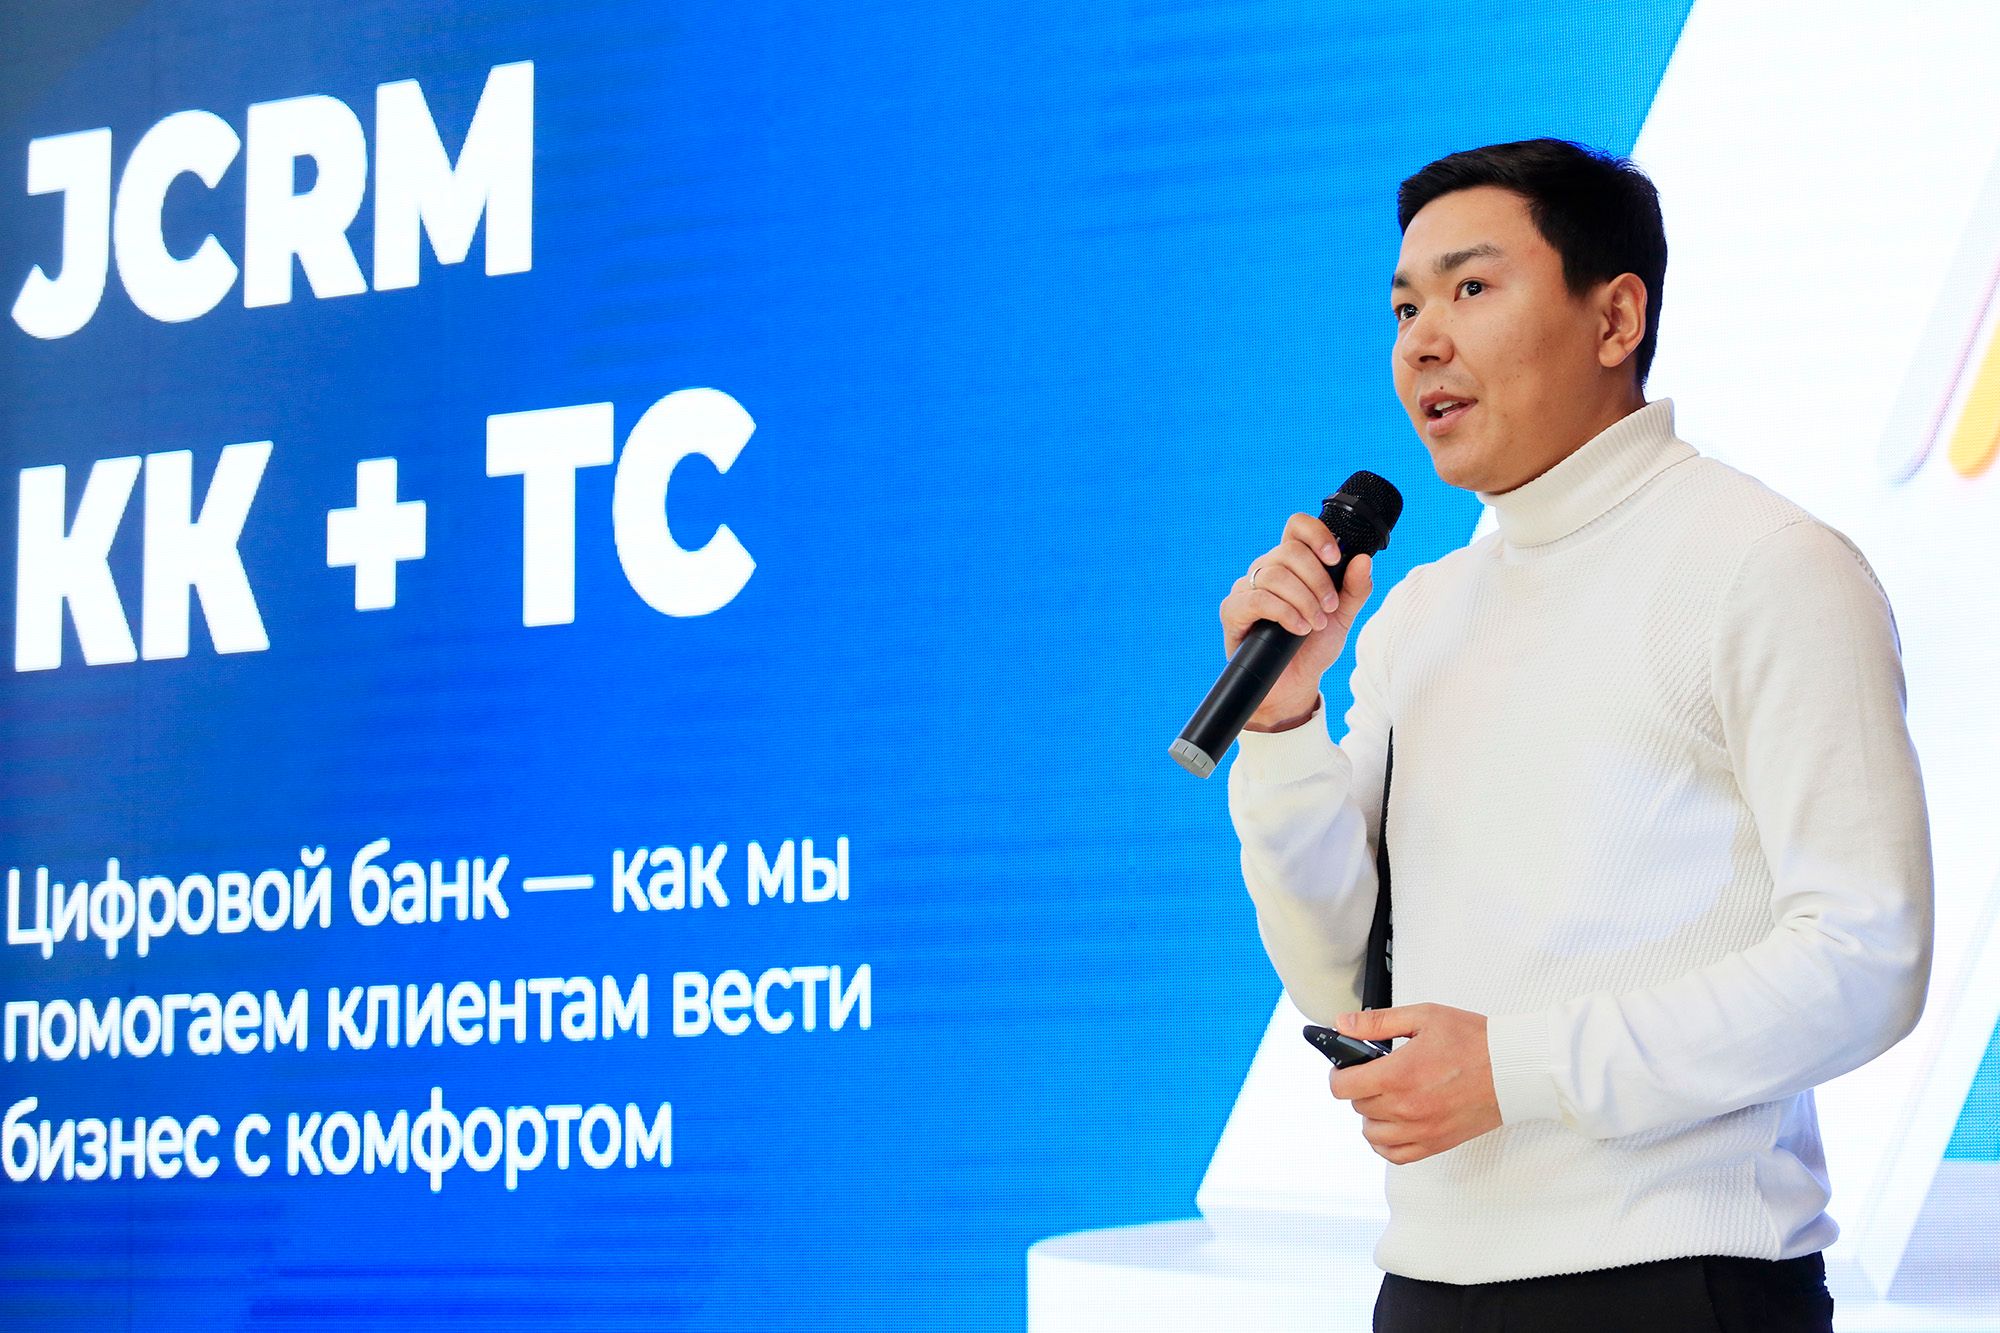 Жомарт Нурбеков, менеджер продукта «Карточка клиента и текущий счет»